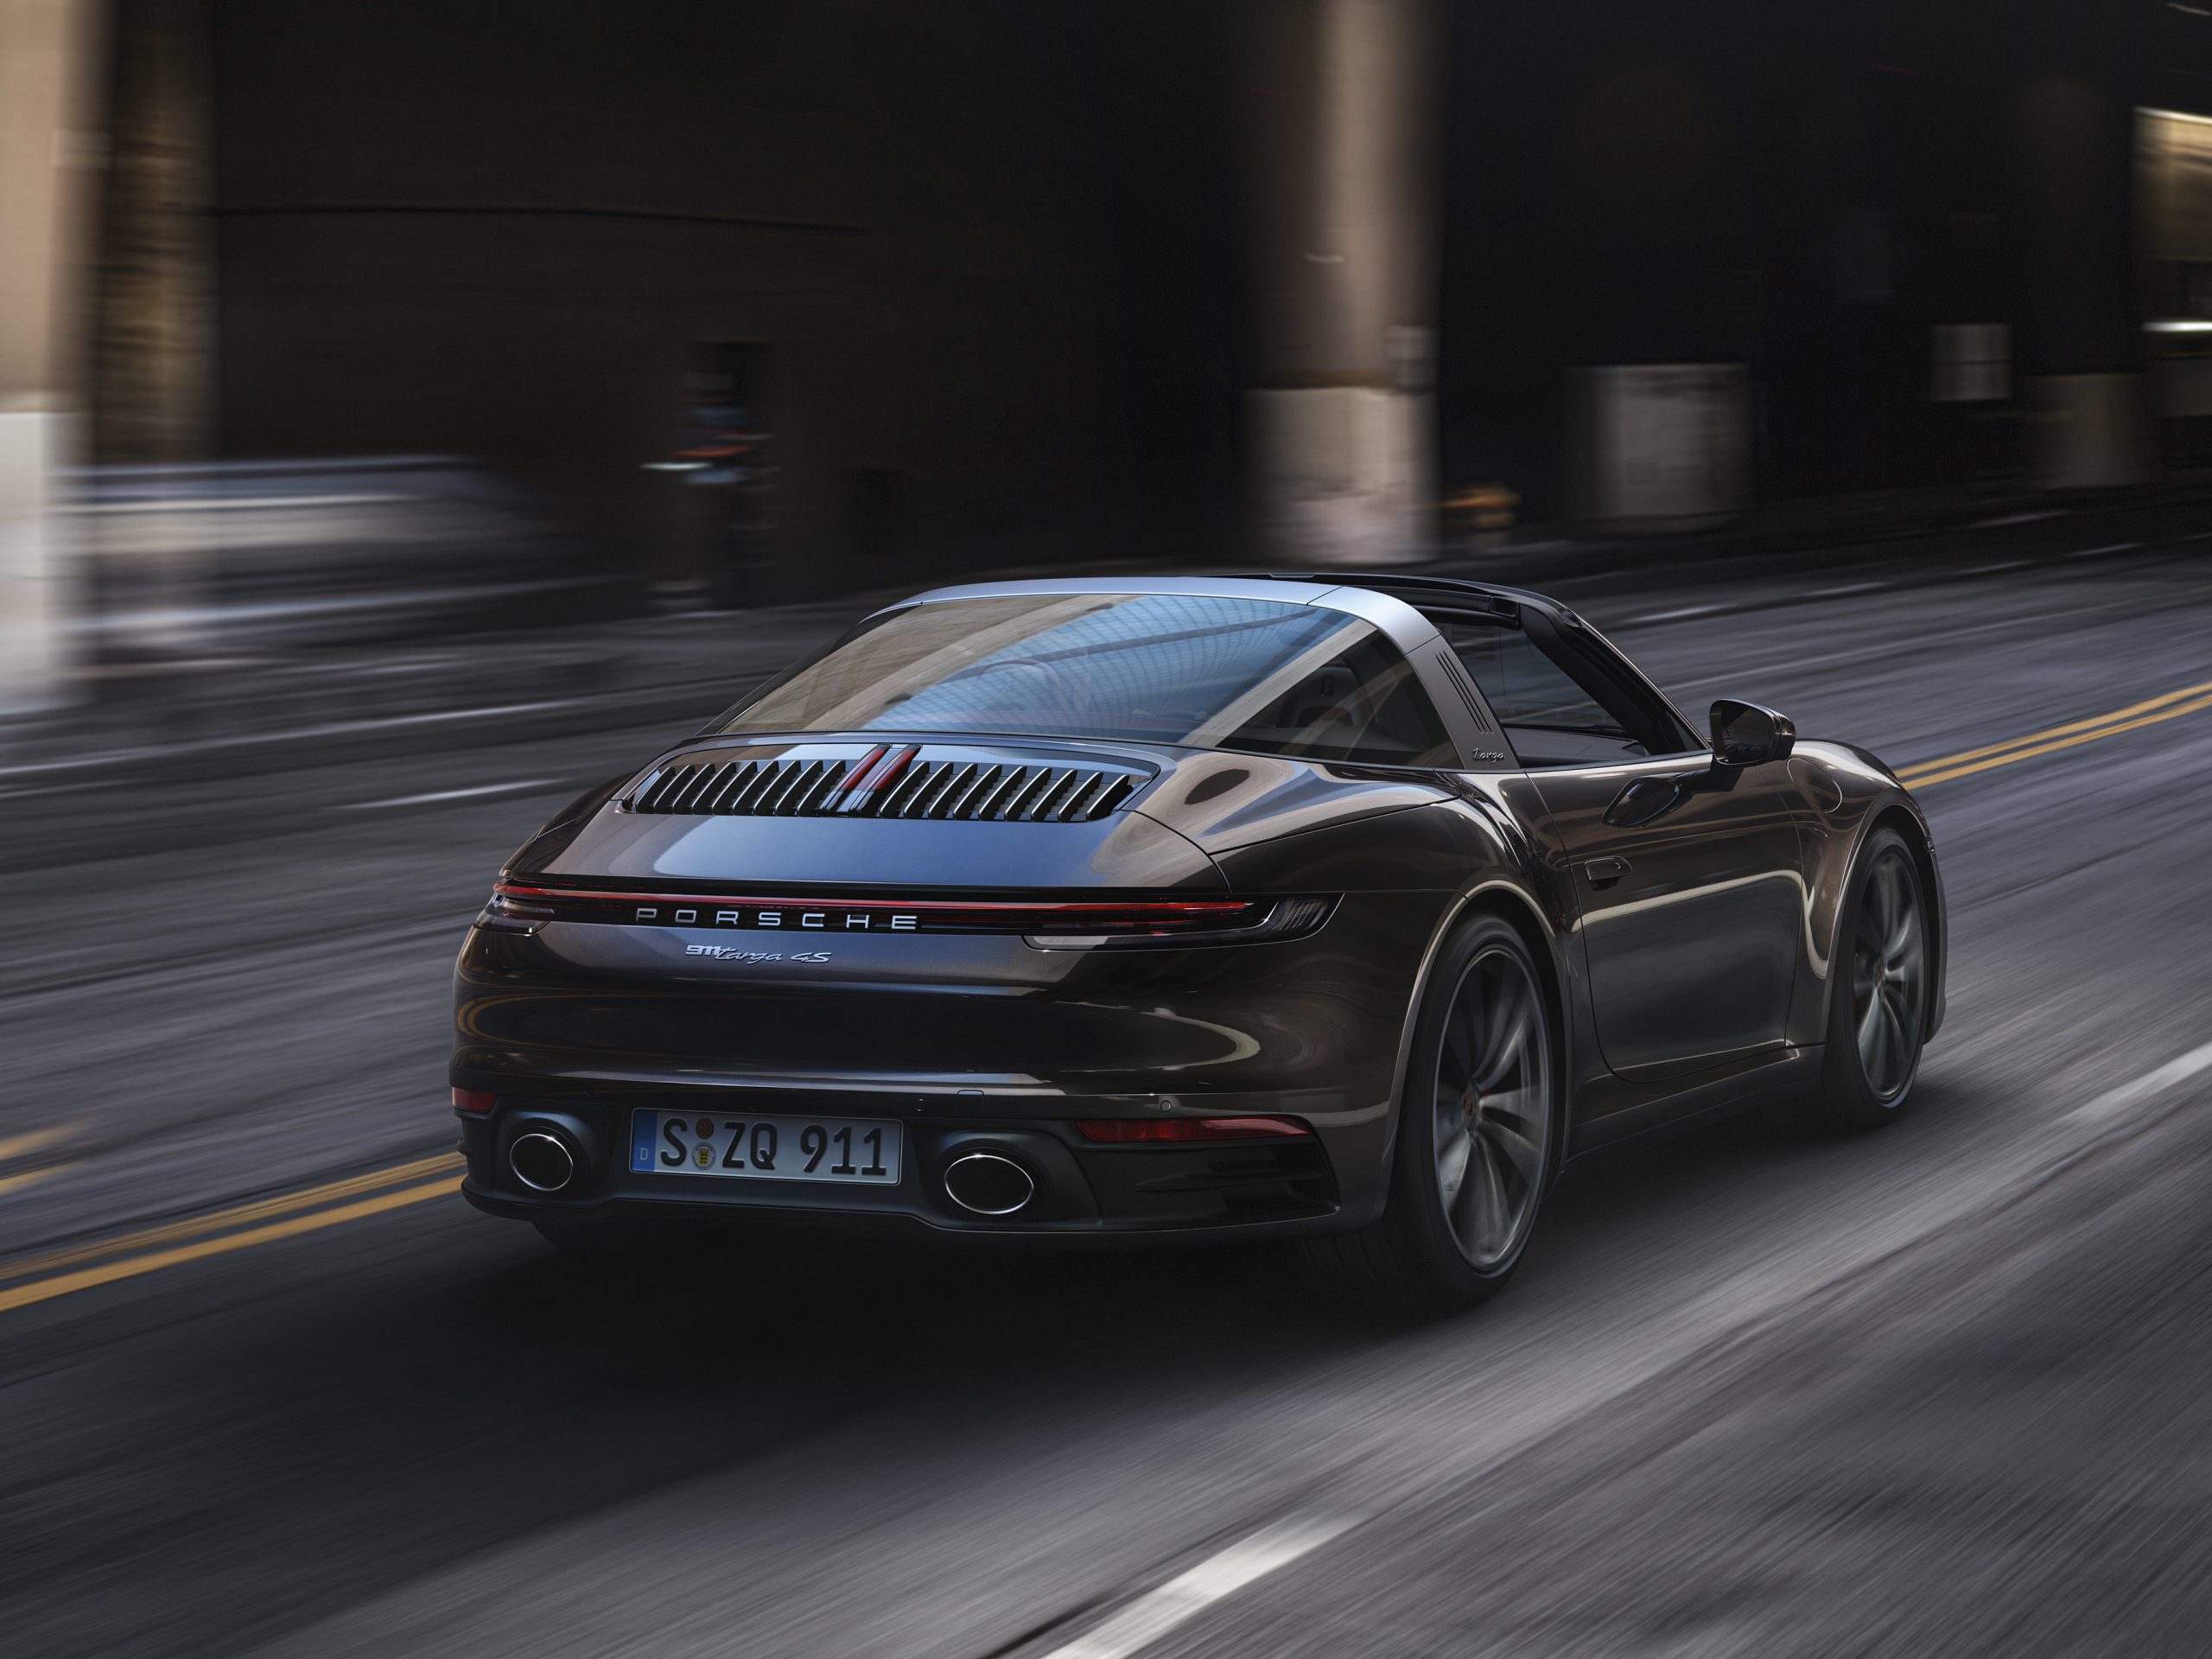 หรูหรา สง่างาม โดดเด่นไร้ที่เปรียบ: ปอร์เช่ 911 ทาร์กา ใหม่ (The new Porsche 911 Targa)